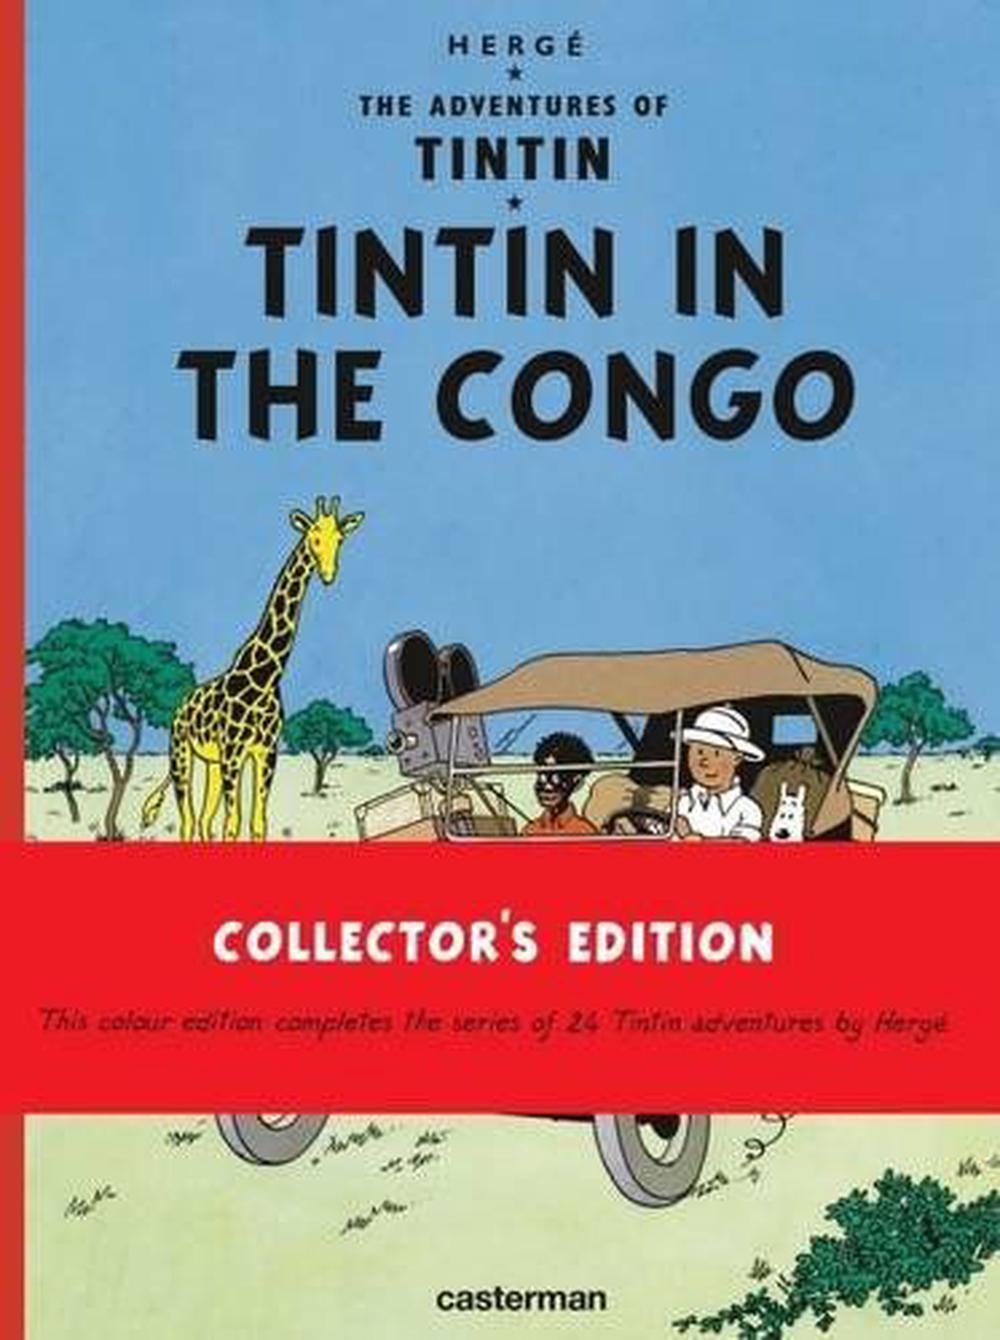 Tintim no Congo e outros personagens ~ Tintim por Tintim